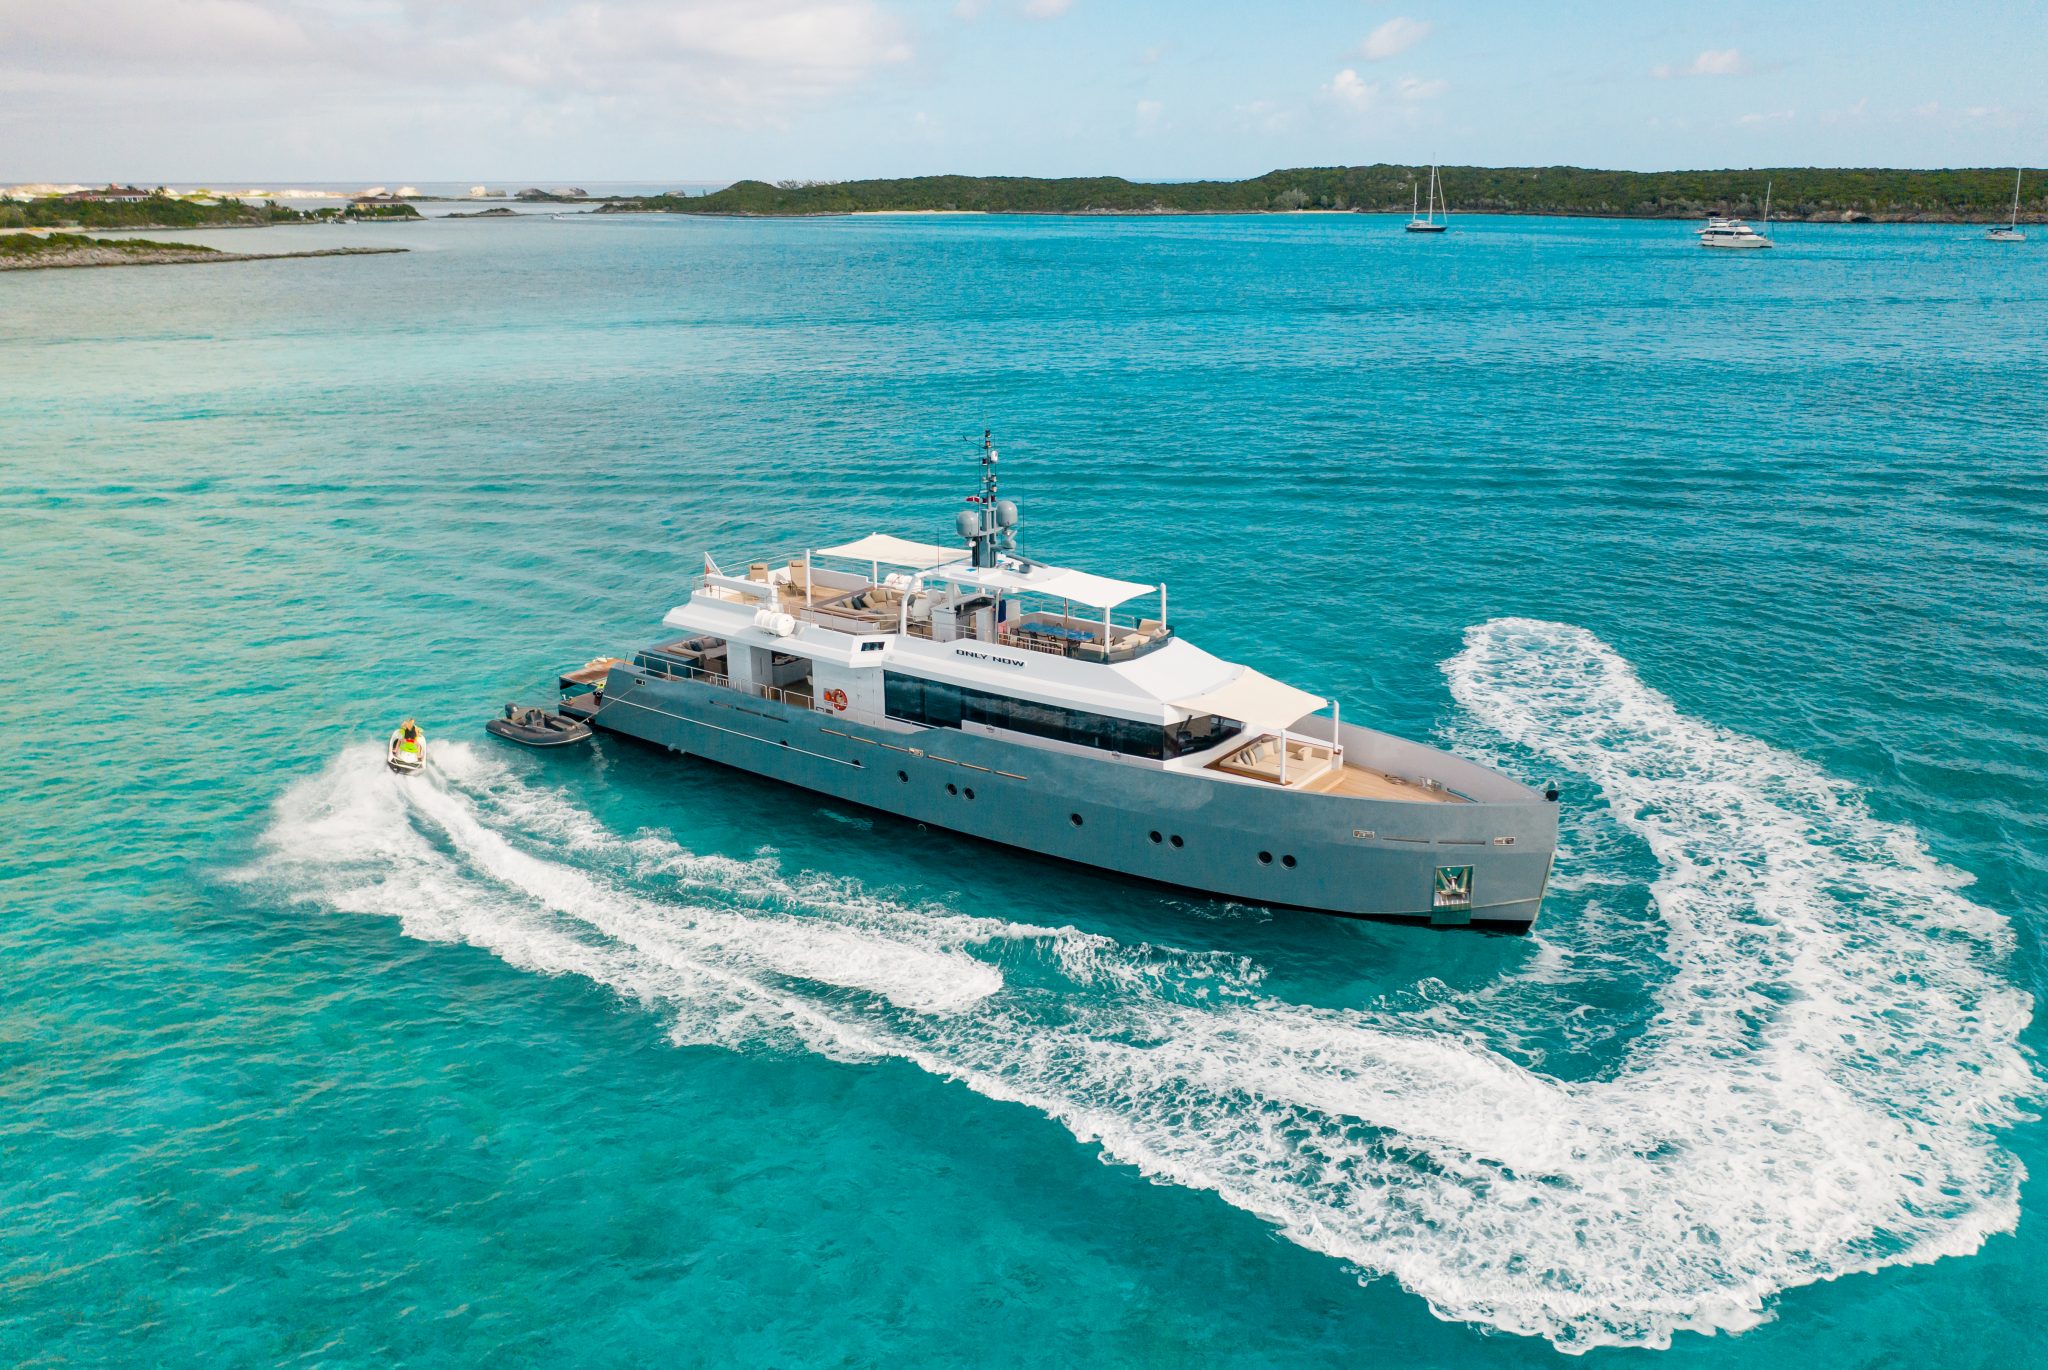 luxury yacht broker jobs